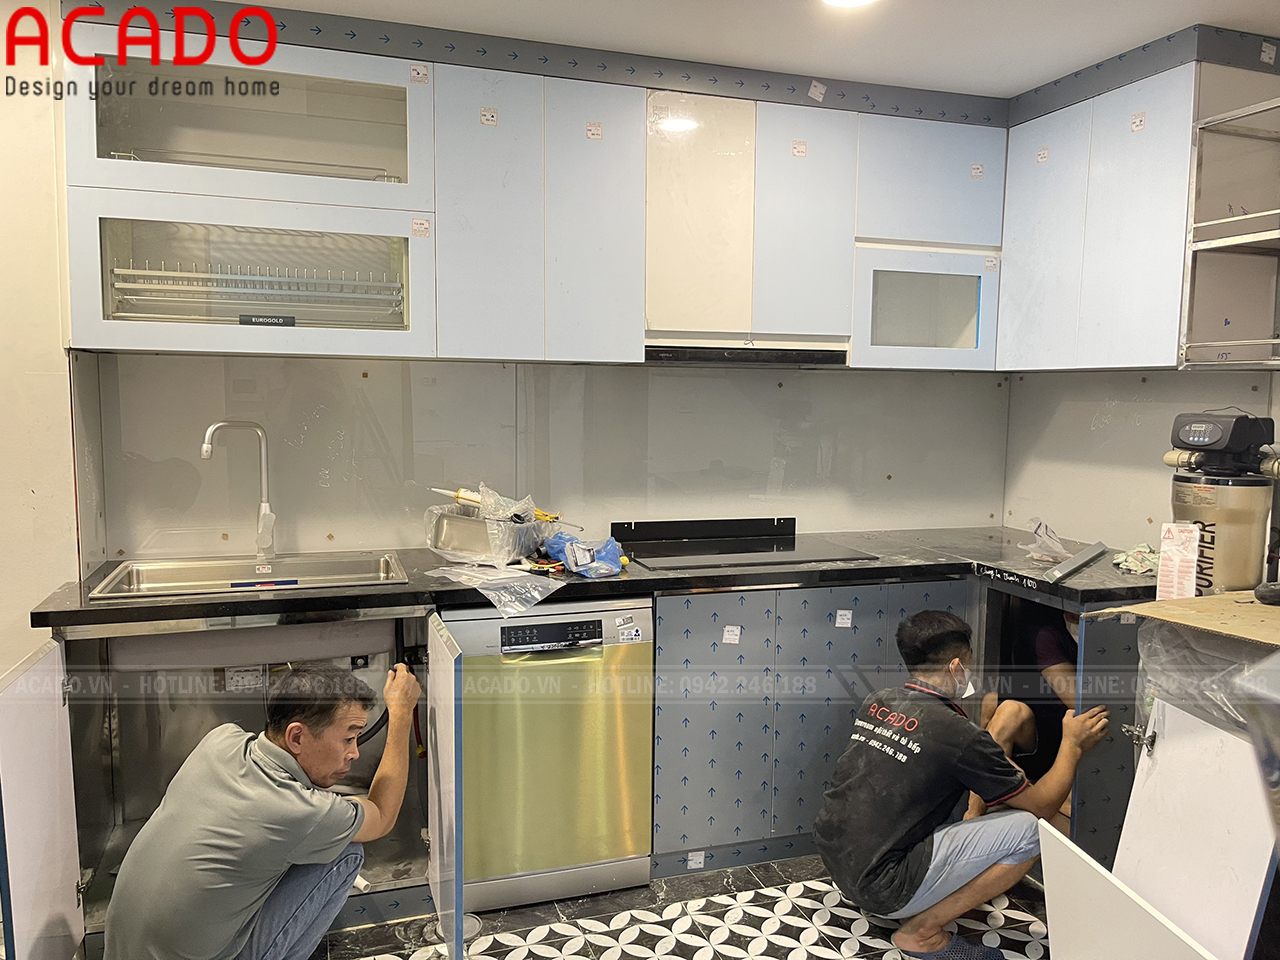 Thợ thi công nội thất ACADO đang lắp đặt tủ bếp cho gia đình anh Việt Anh